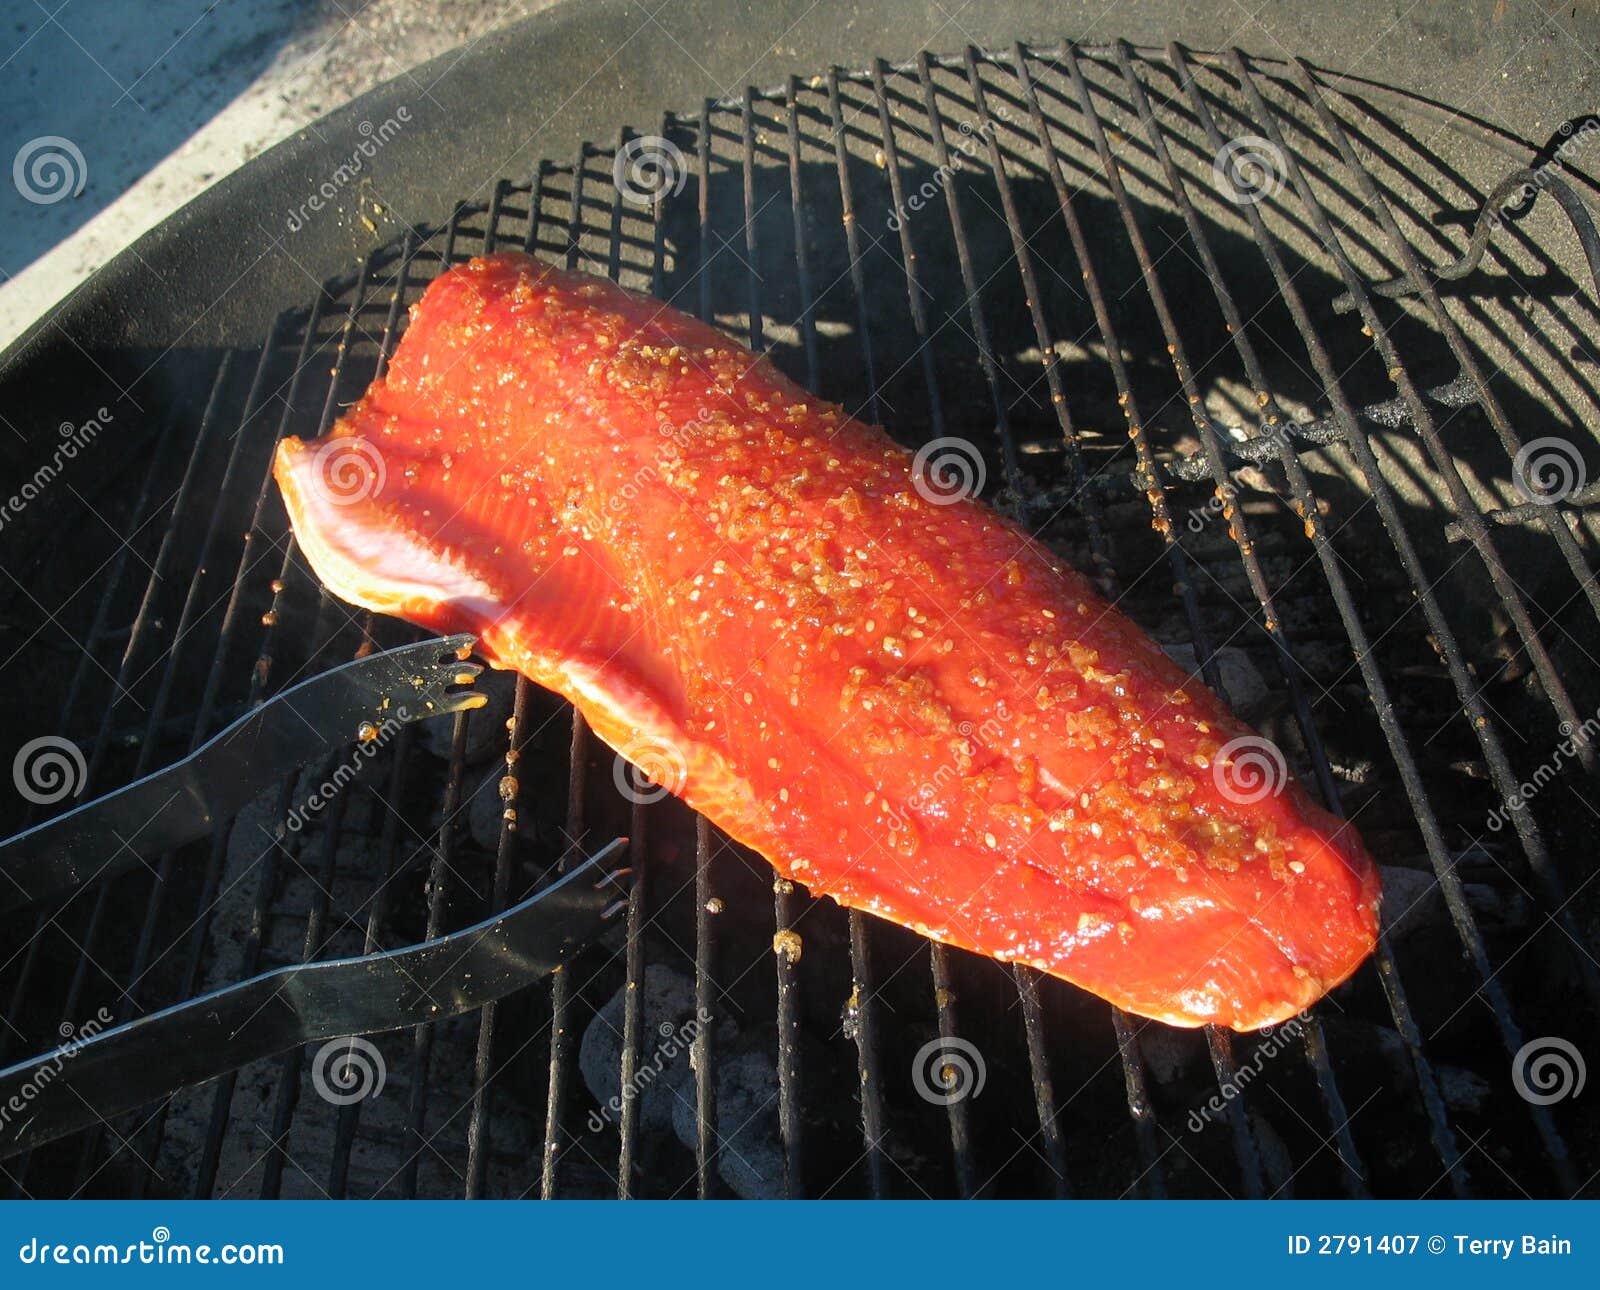 grilling copper river salmon